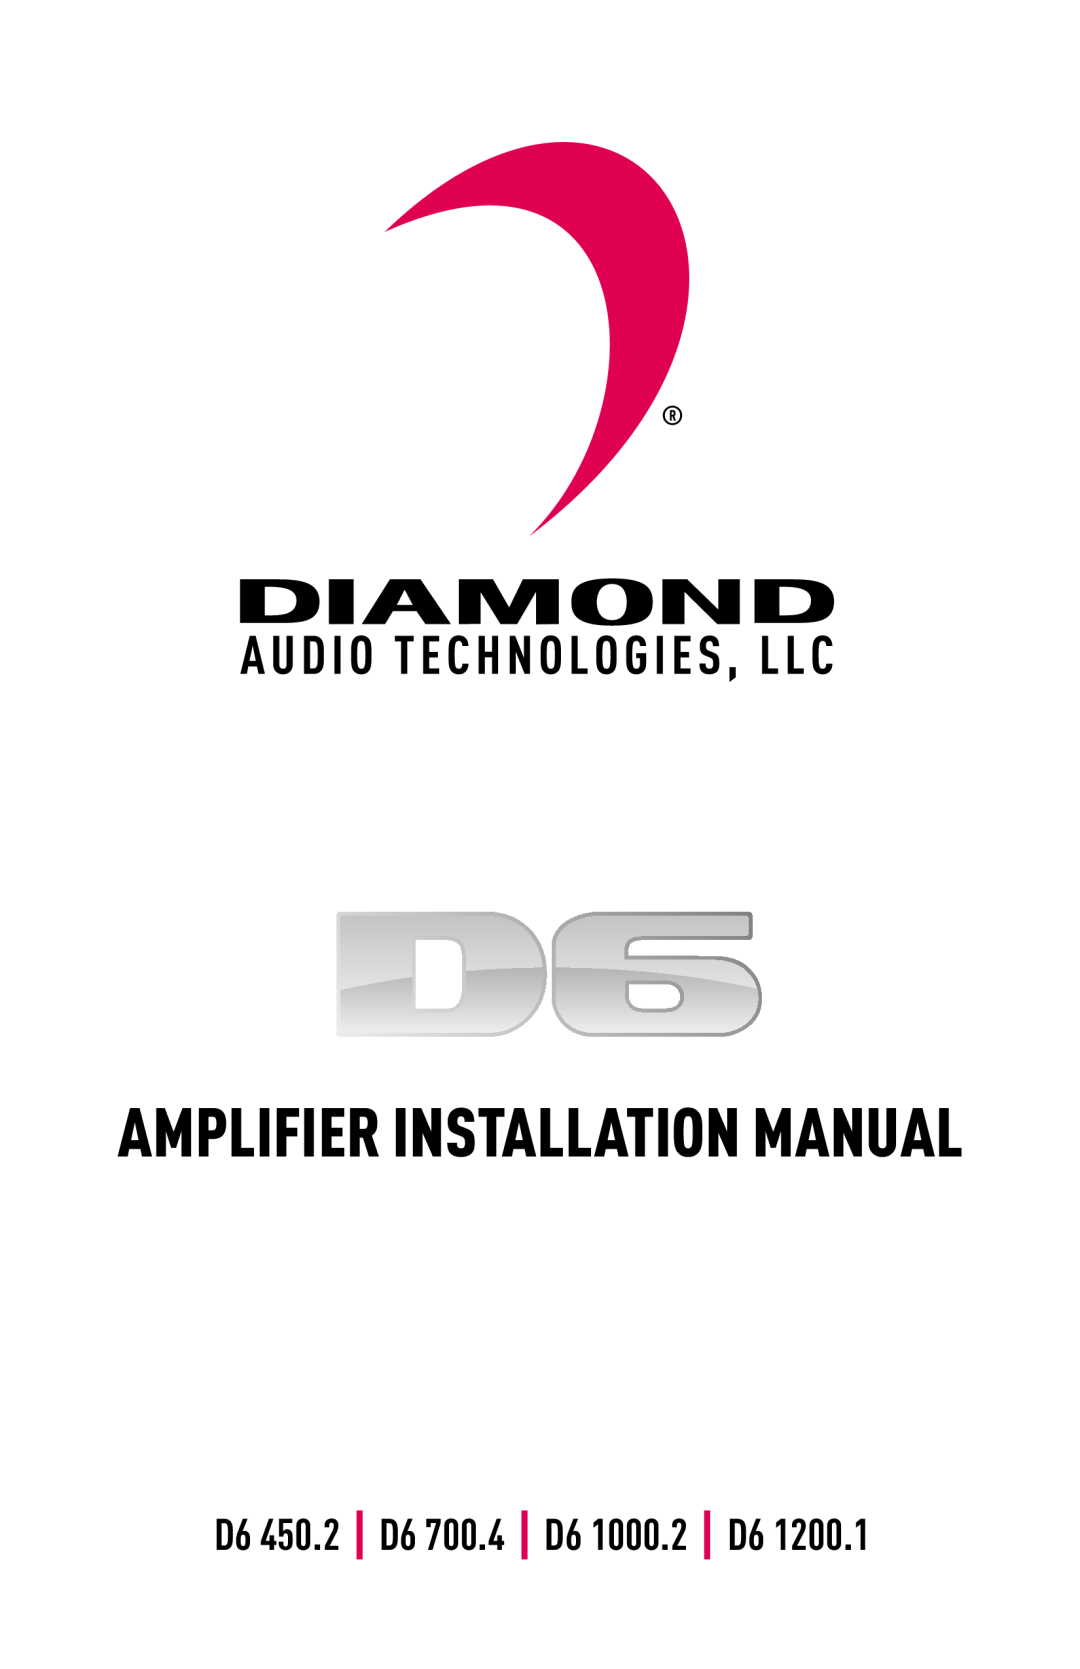 Diamond Audio Technology D6 1200.1 installation manual Amplifier Installation Manual, D6 450.2 D6 700.4 D6 1000.2 D6 